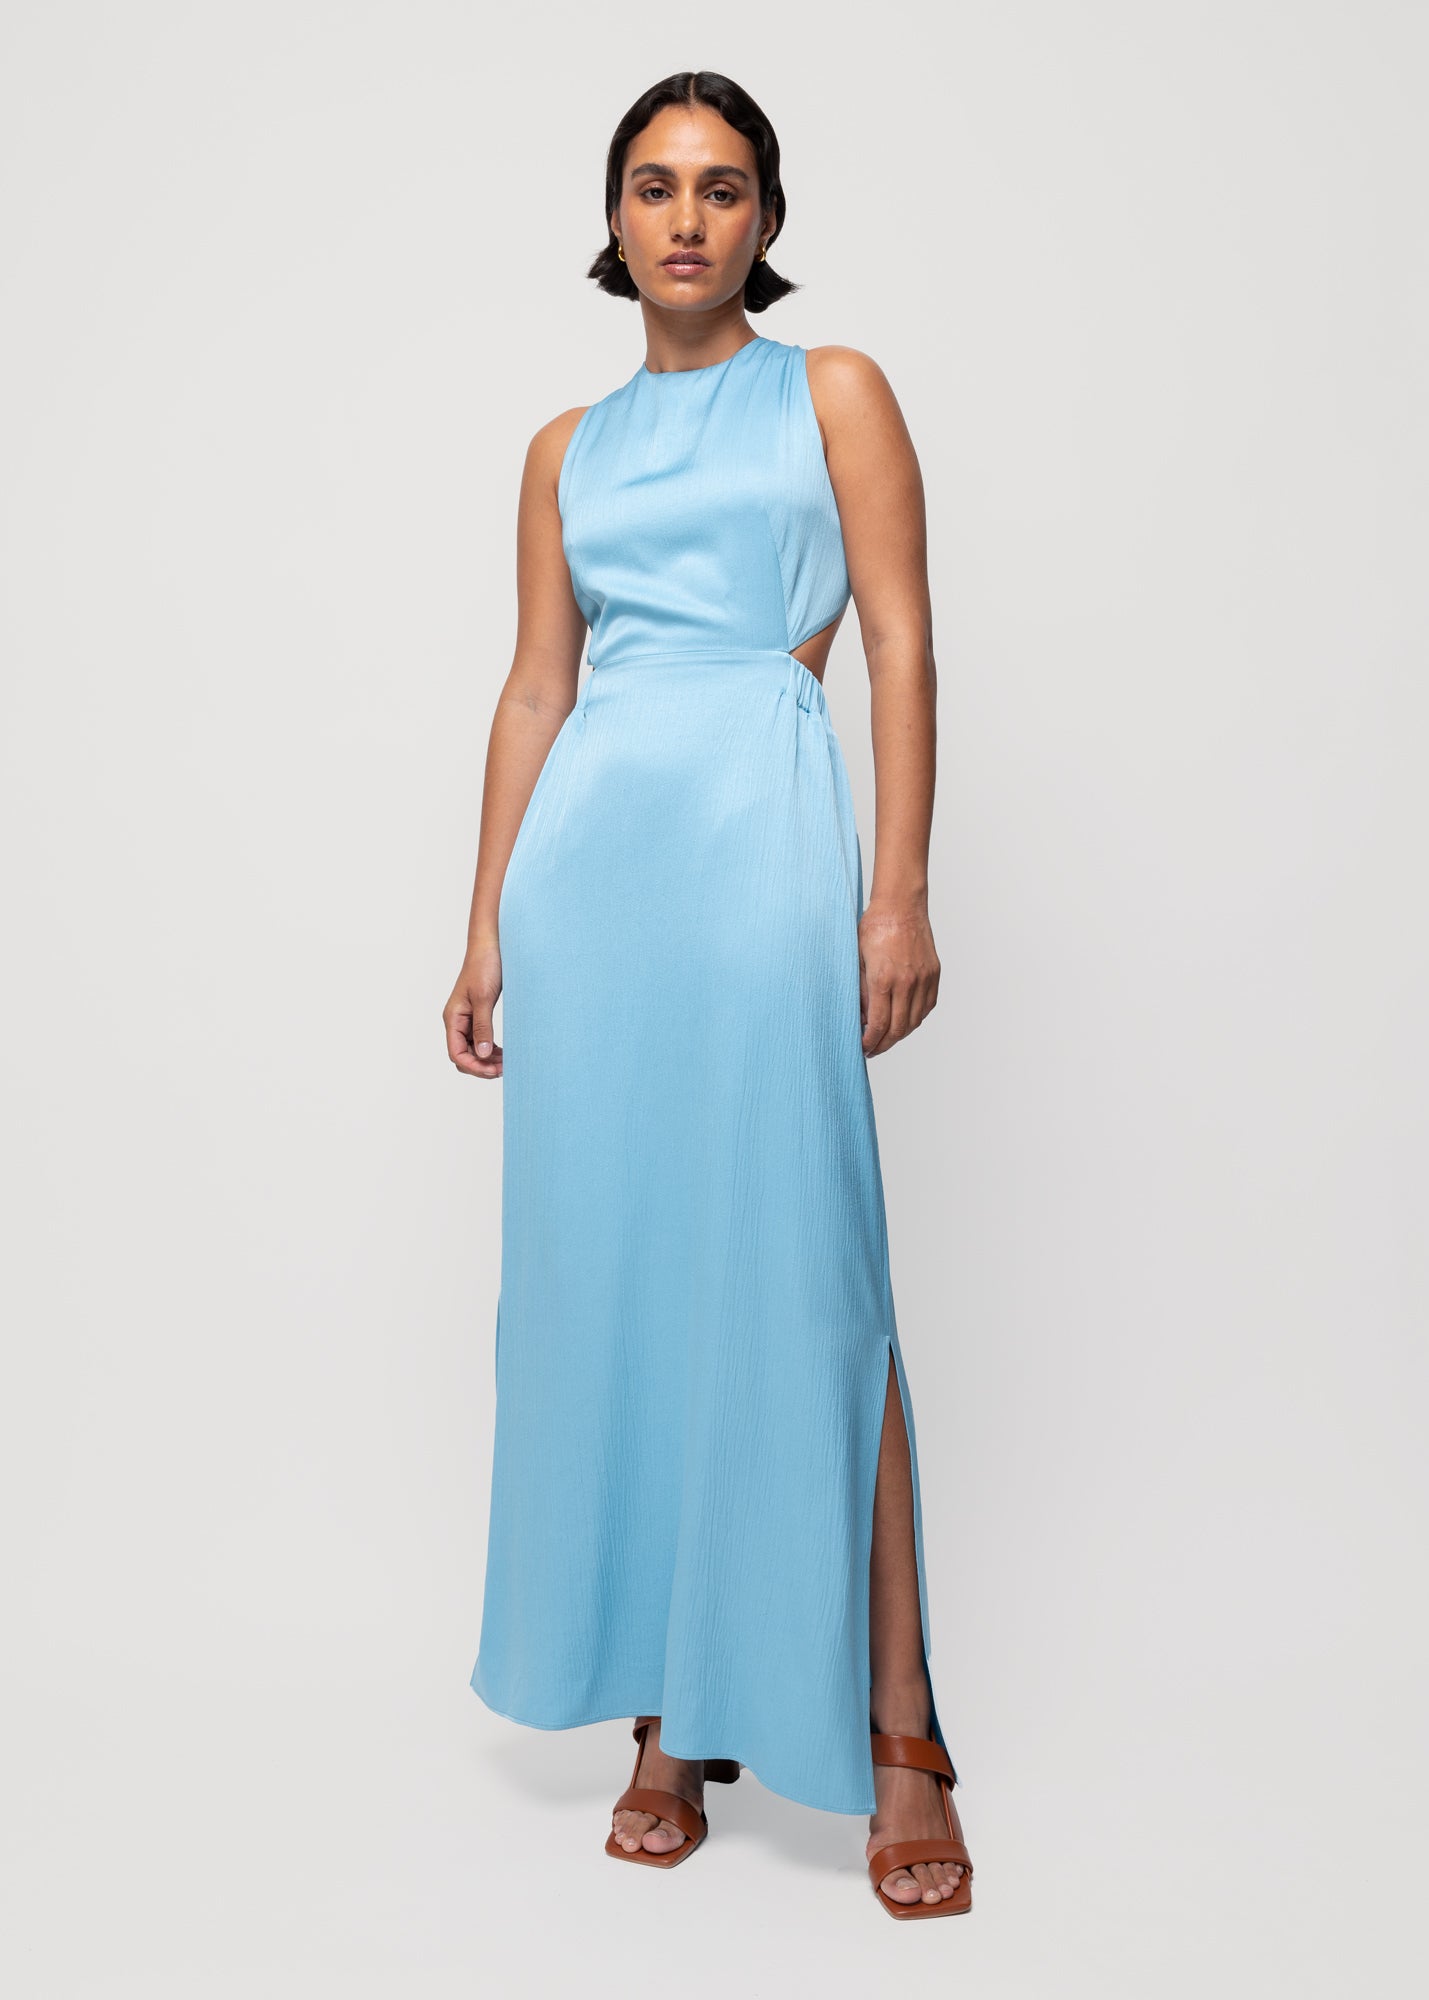 Oordeel Geavanceerd Gezamenlijke selectie Ontdek alle jurken | De officiële Vanilia webshop